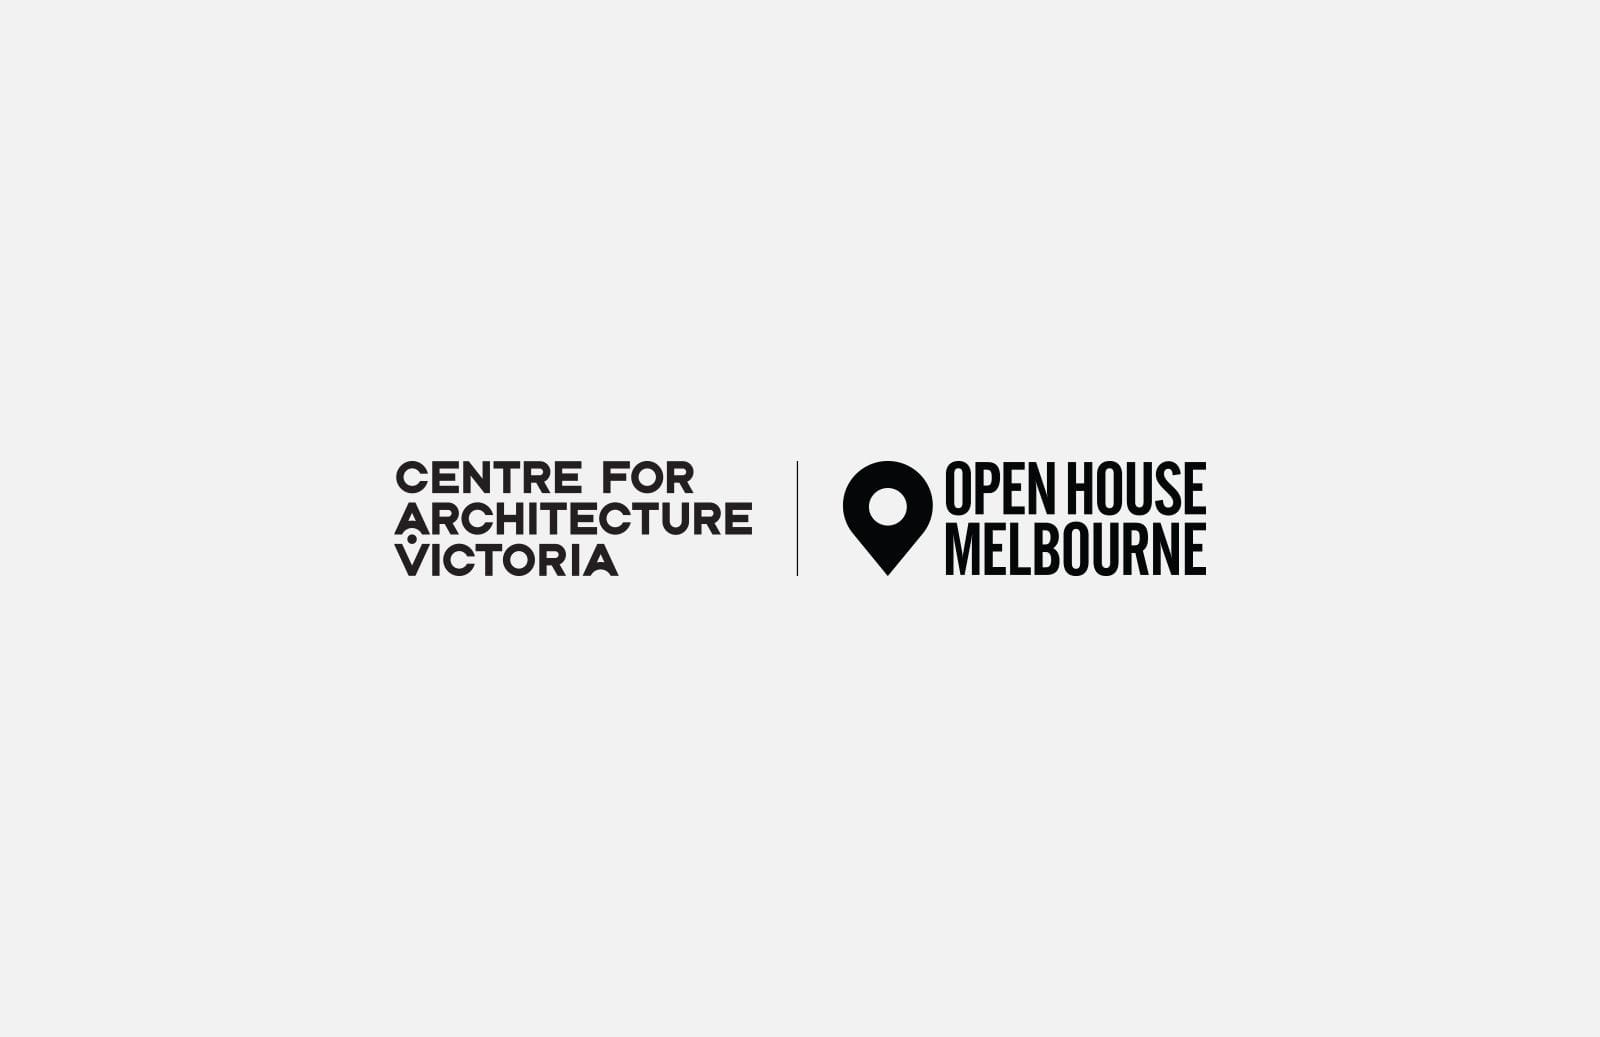 Centre for Architecture Victoria Open House Melbourne